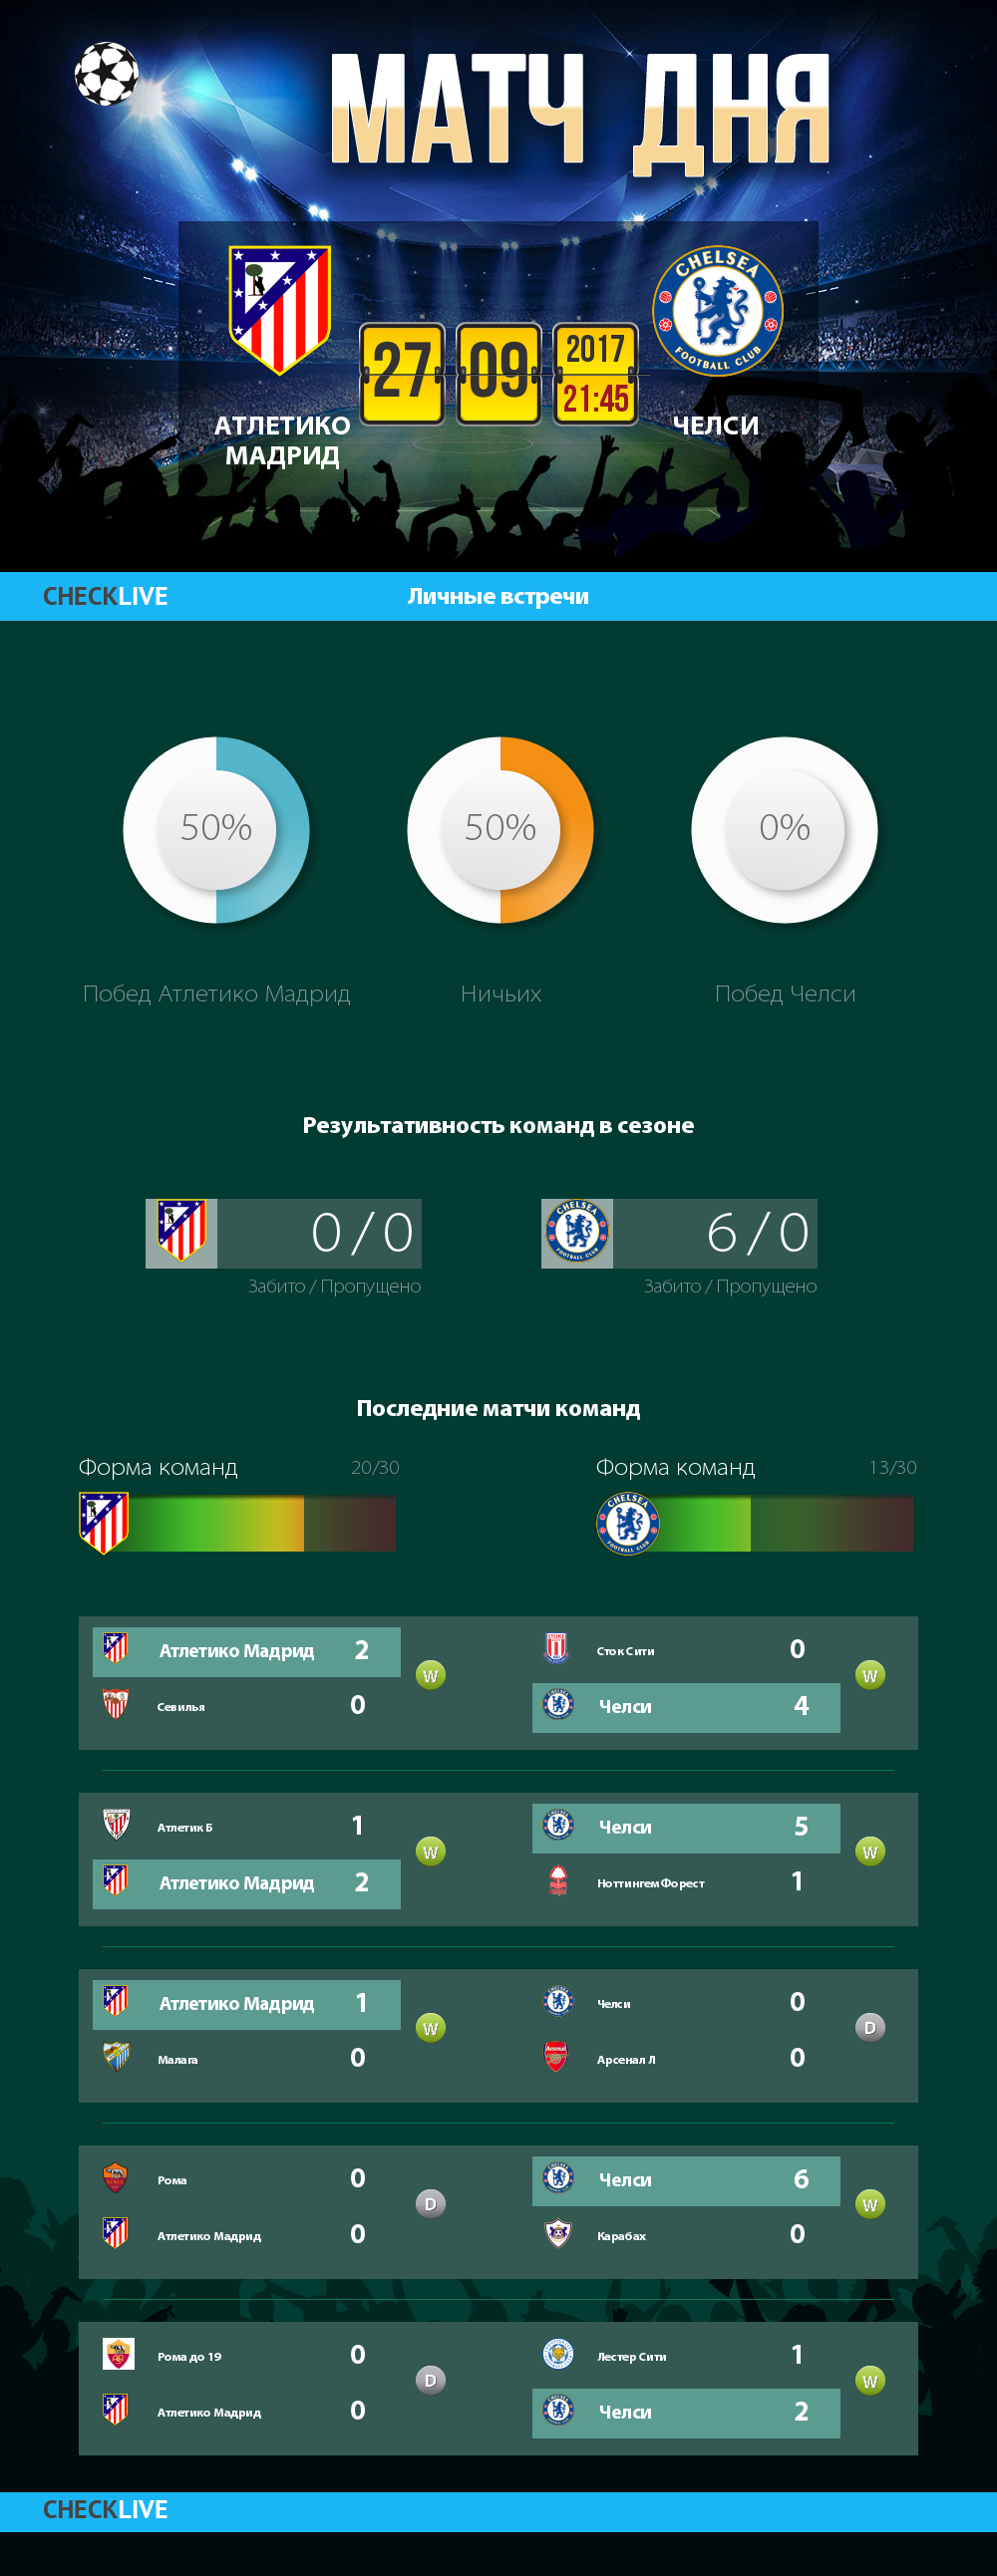 Инфографика Атлетико Мадрид и Челси матч дня 27.09.2017